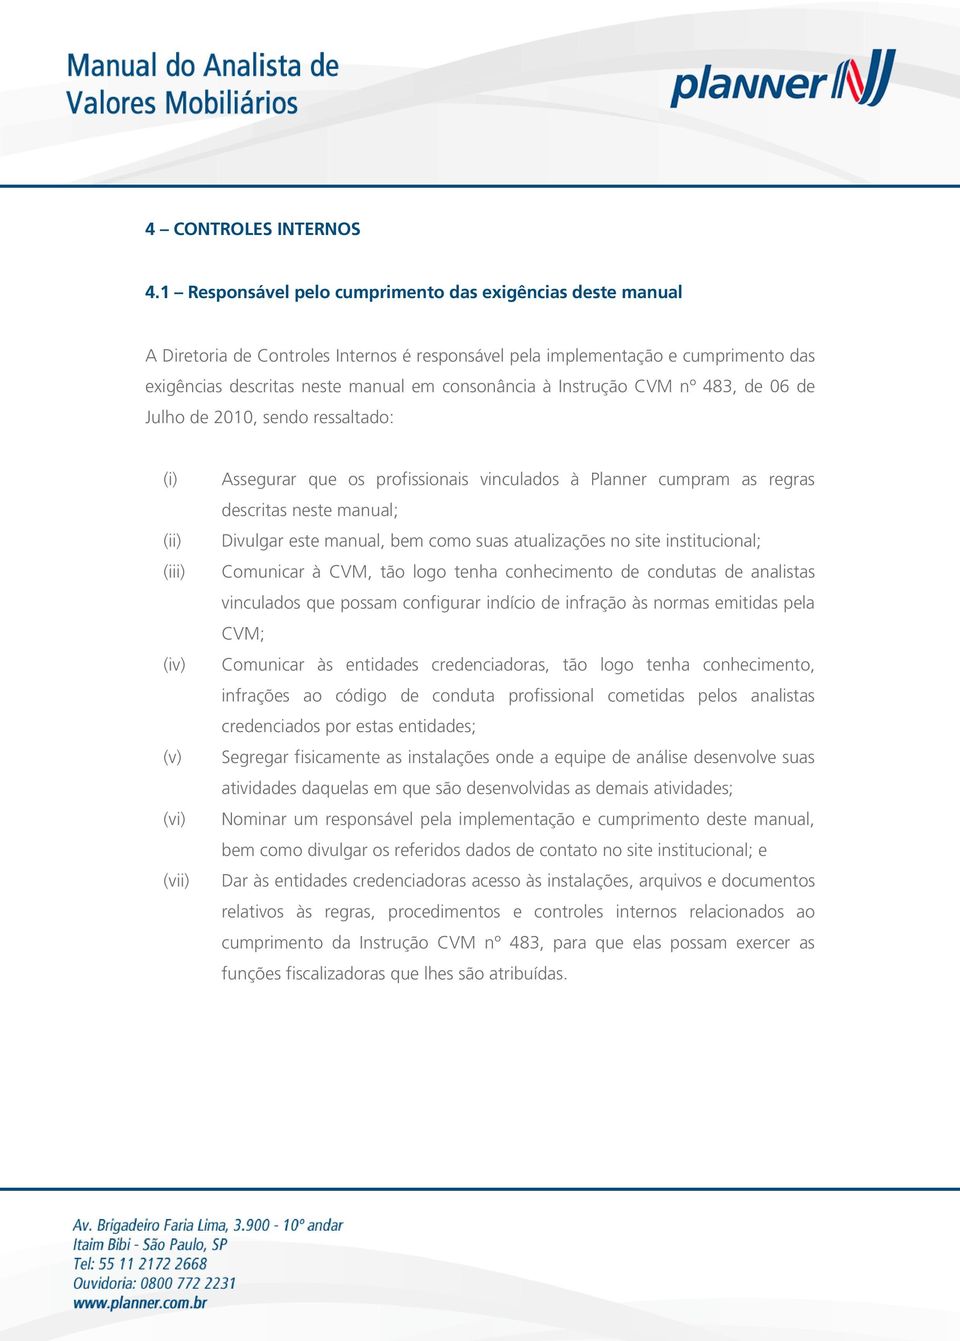 Instrução CVM nº 483, de 06 de Julho de 2010, sendo ressaltado: (iii) (iv) (v) (vi) (vii) Assegurar que os profissionais vinculados à Planner cumpram as regras descritas neste manual; Divulgar este